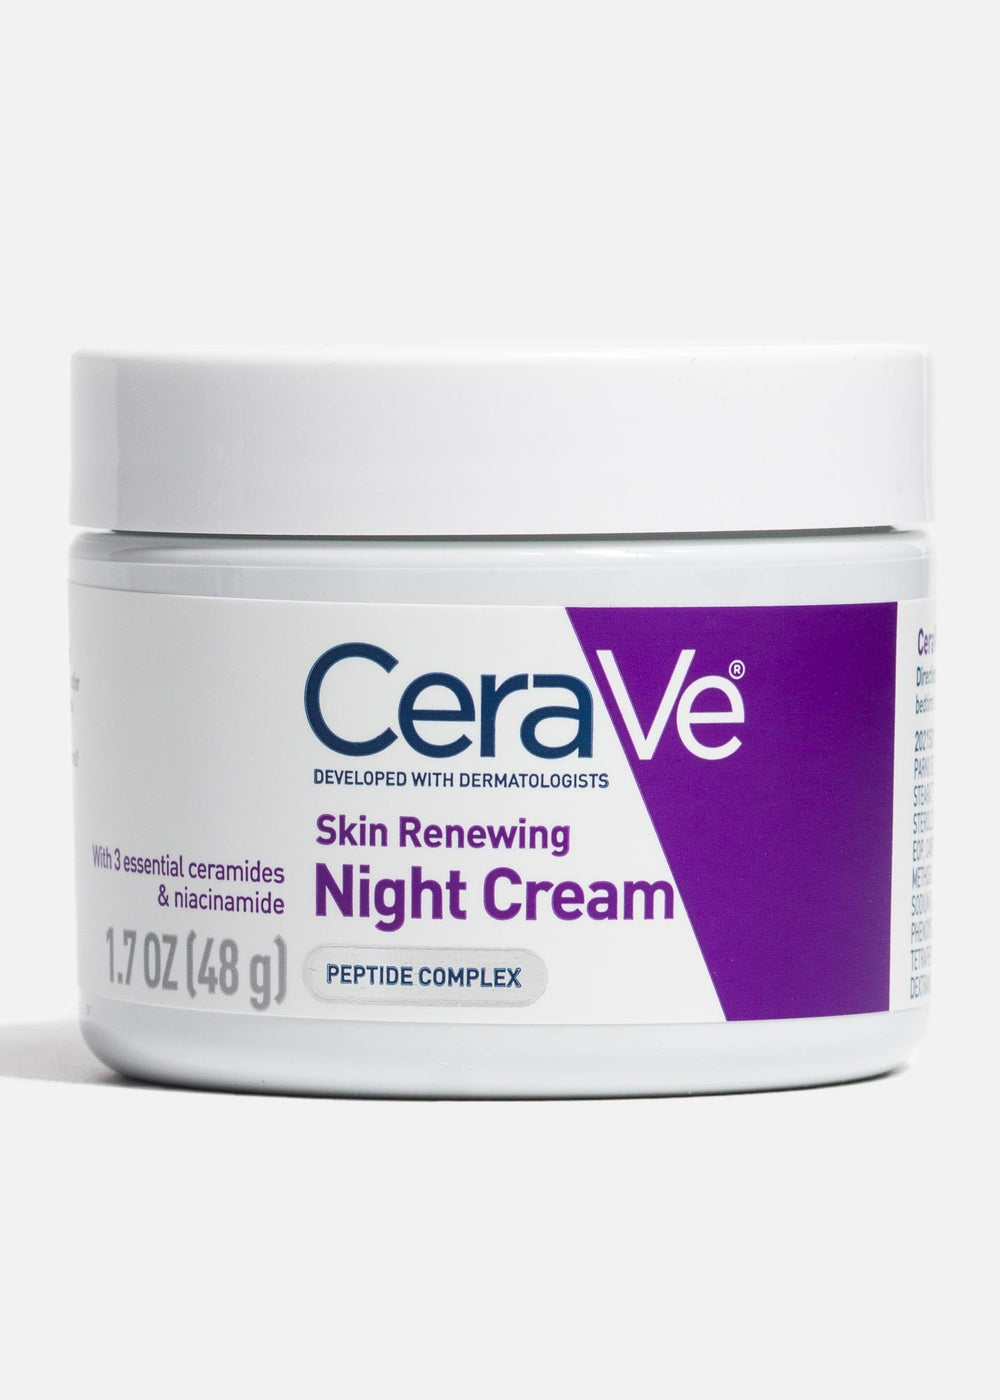 precio de cerave night cream romanamx